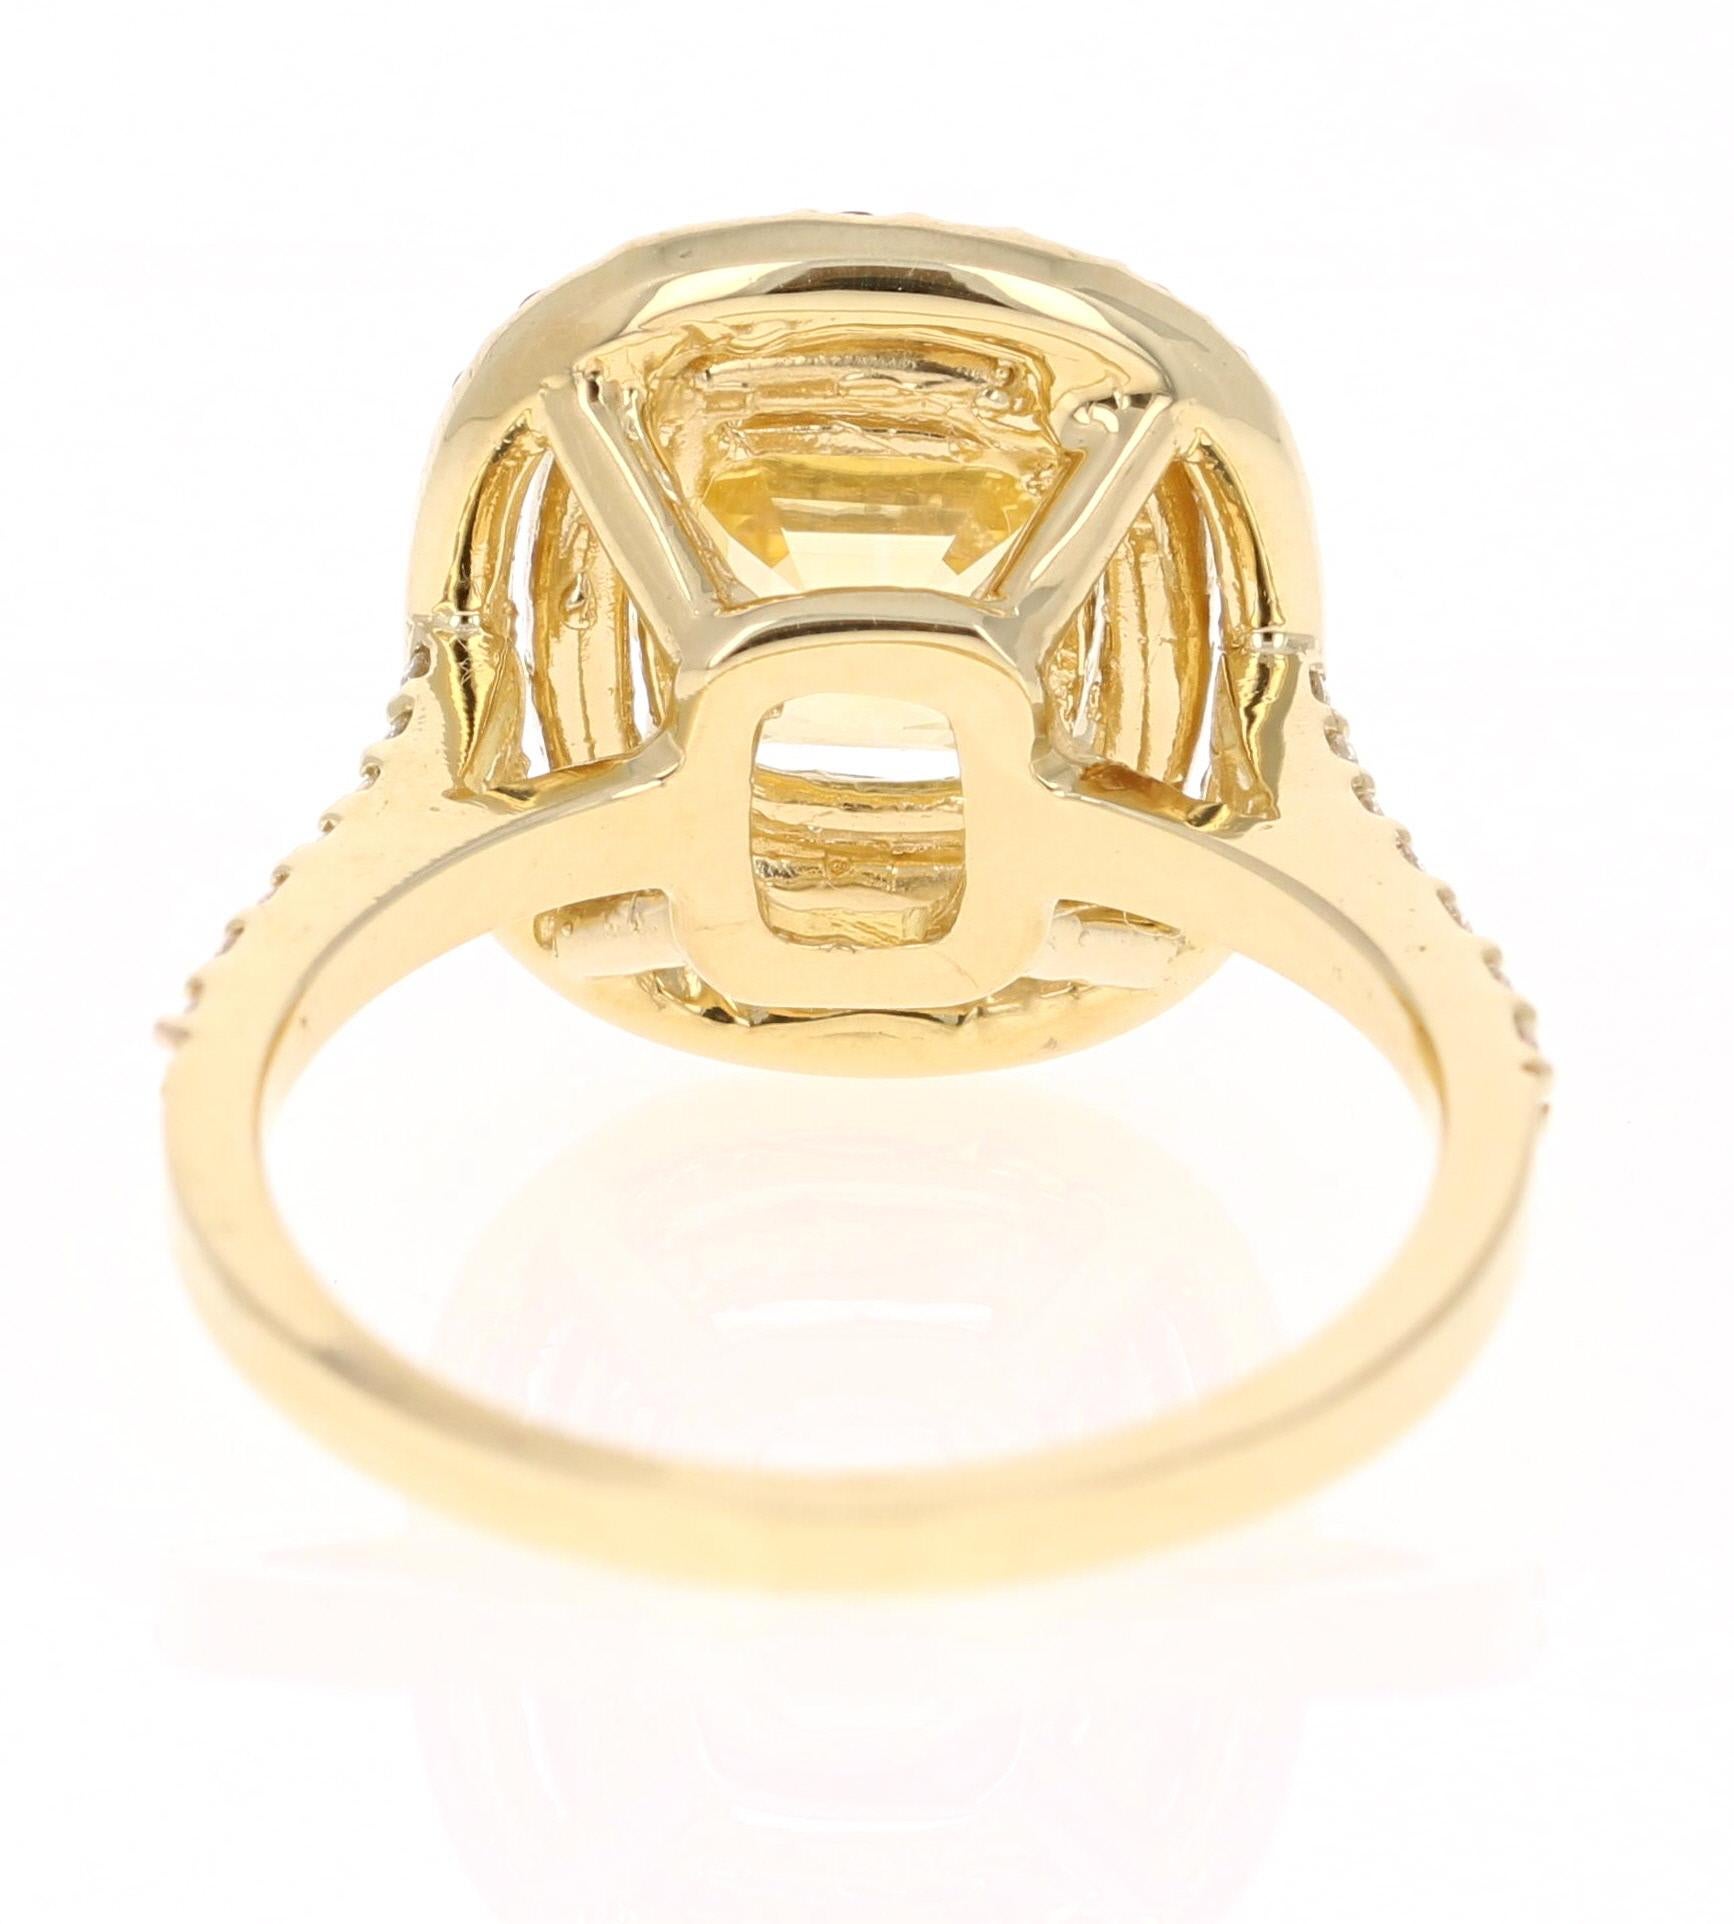 Asscher Cut 3.96 Carat GIA Certified Yellow Sapphire and Diamond 18 Karat Yellow Gold Ring